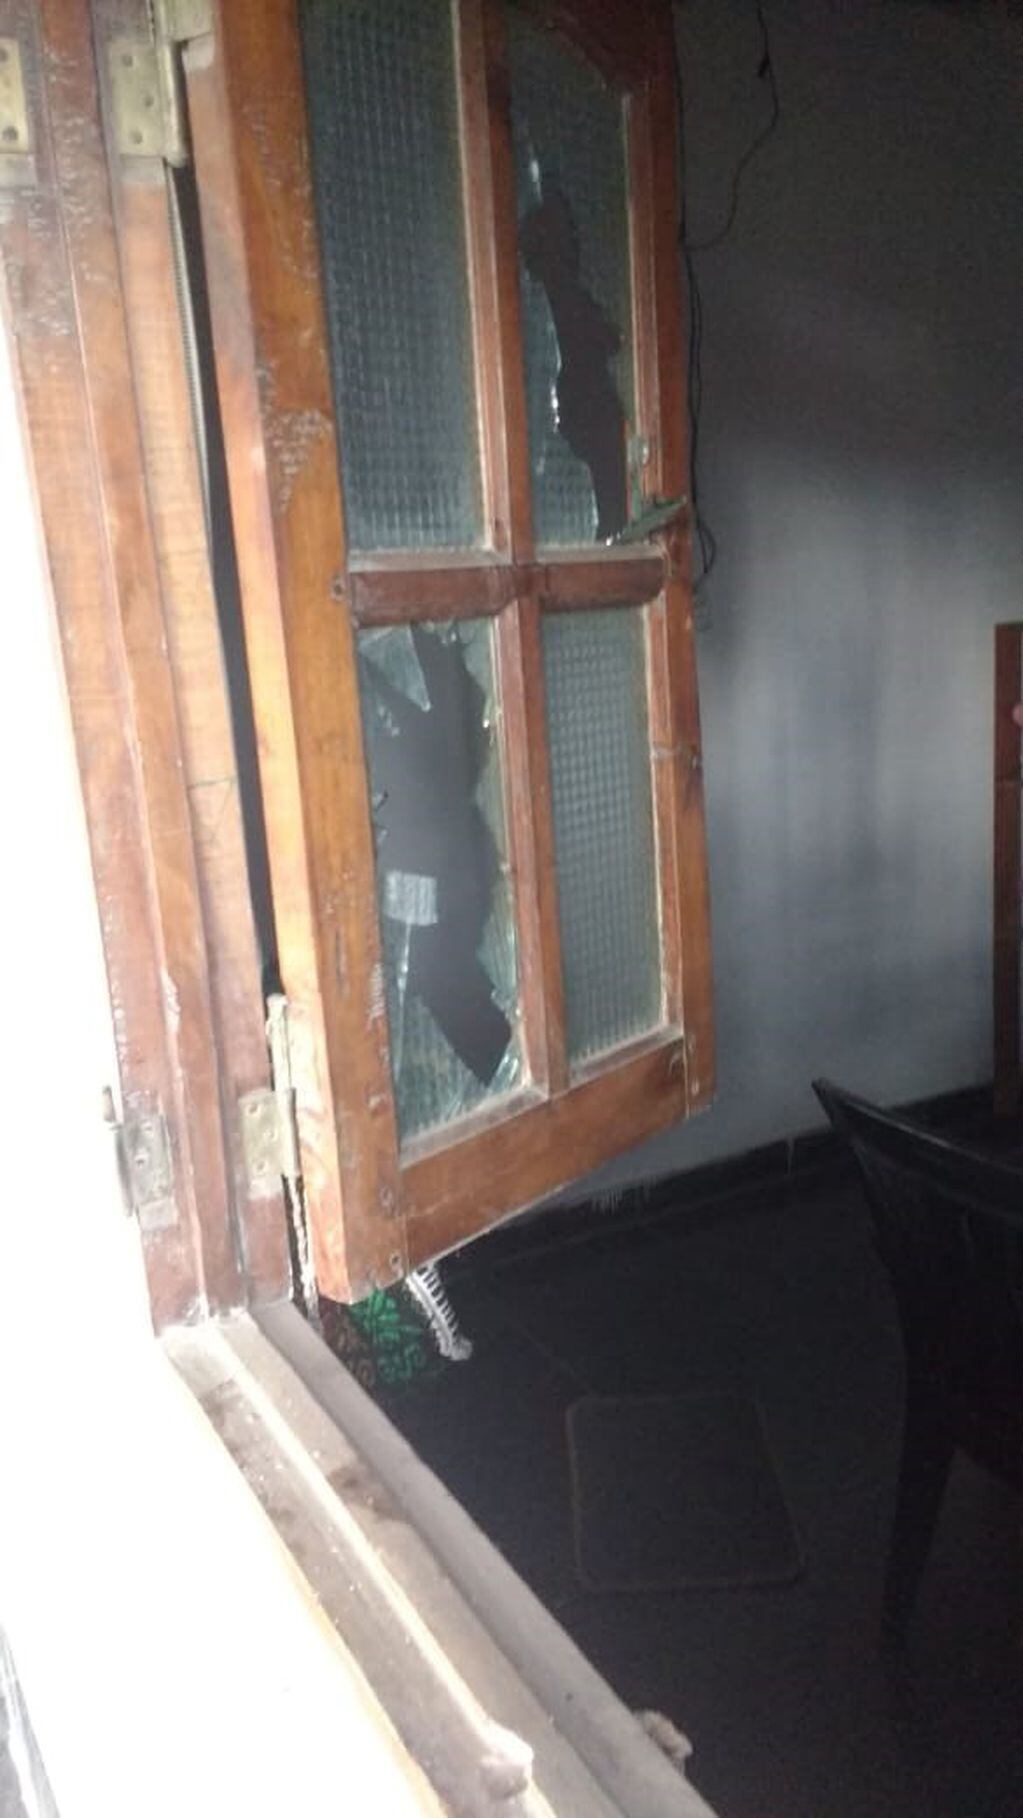 los atacantes ingresaron a la vivienda y continuaron disparando. (MPF)